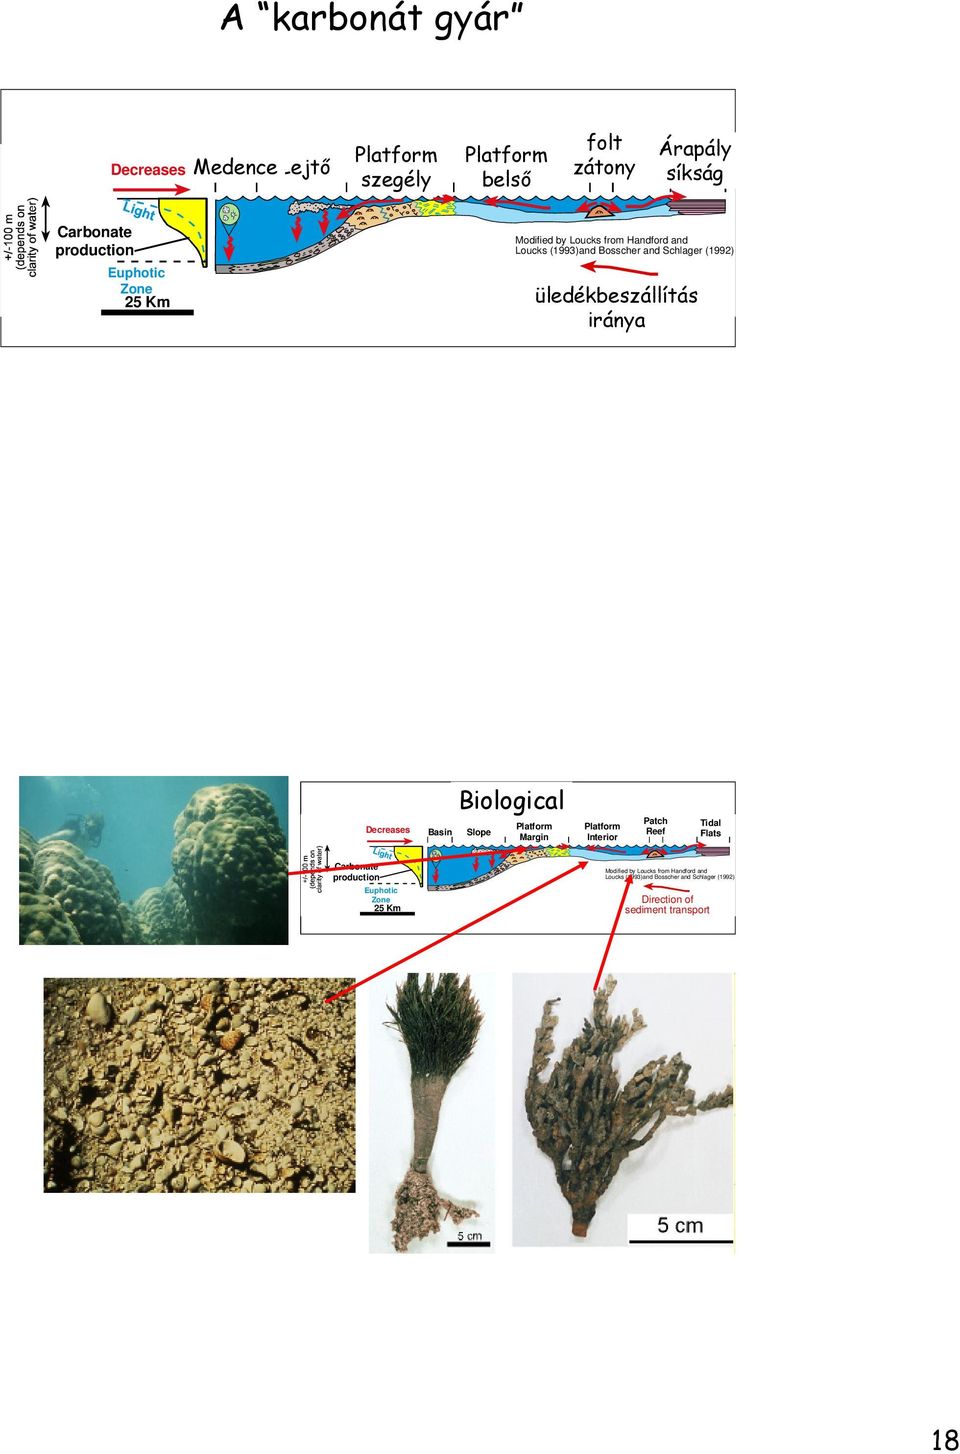 üledékbeszállítás Direction of sediment transport iránya Decreases Basin Biological Slope Platform Margin Platform Interior Patch Reef Tidal Flats